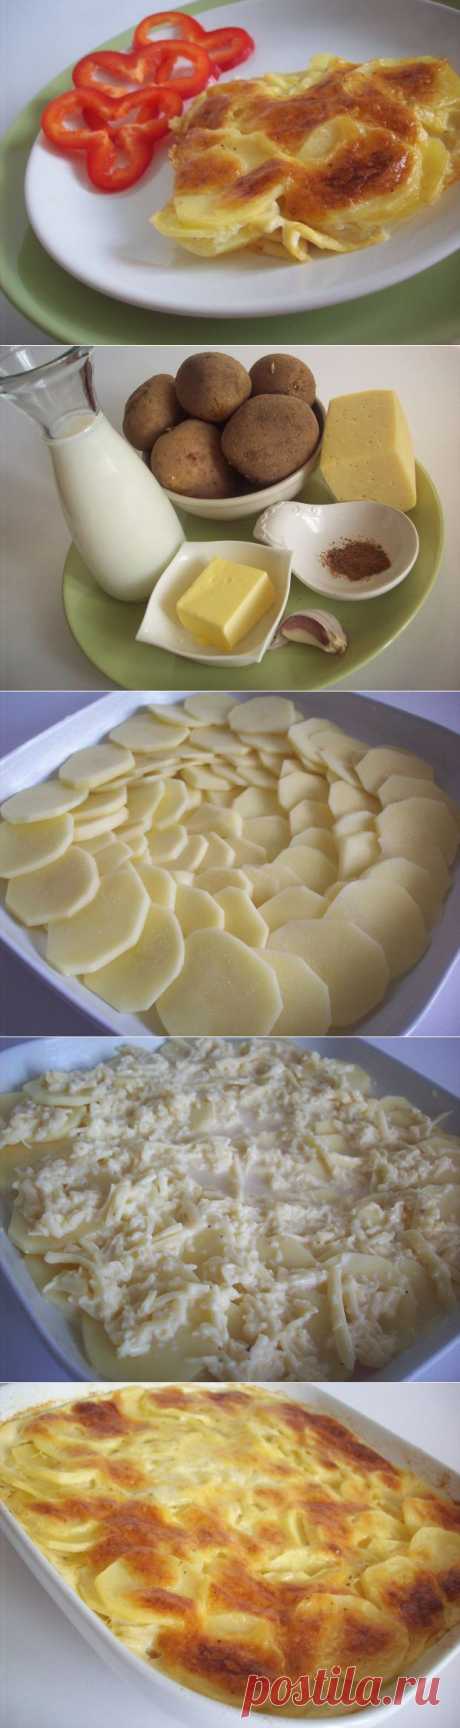 Запеченный под сыром картофель «Дофине» | Ваши любимые рецепты